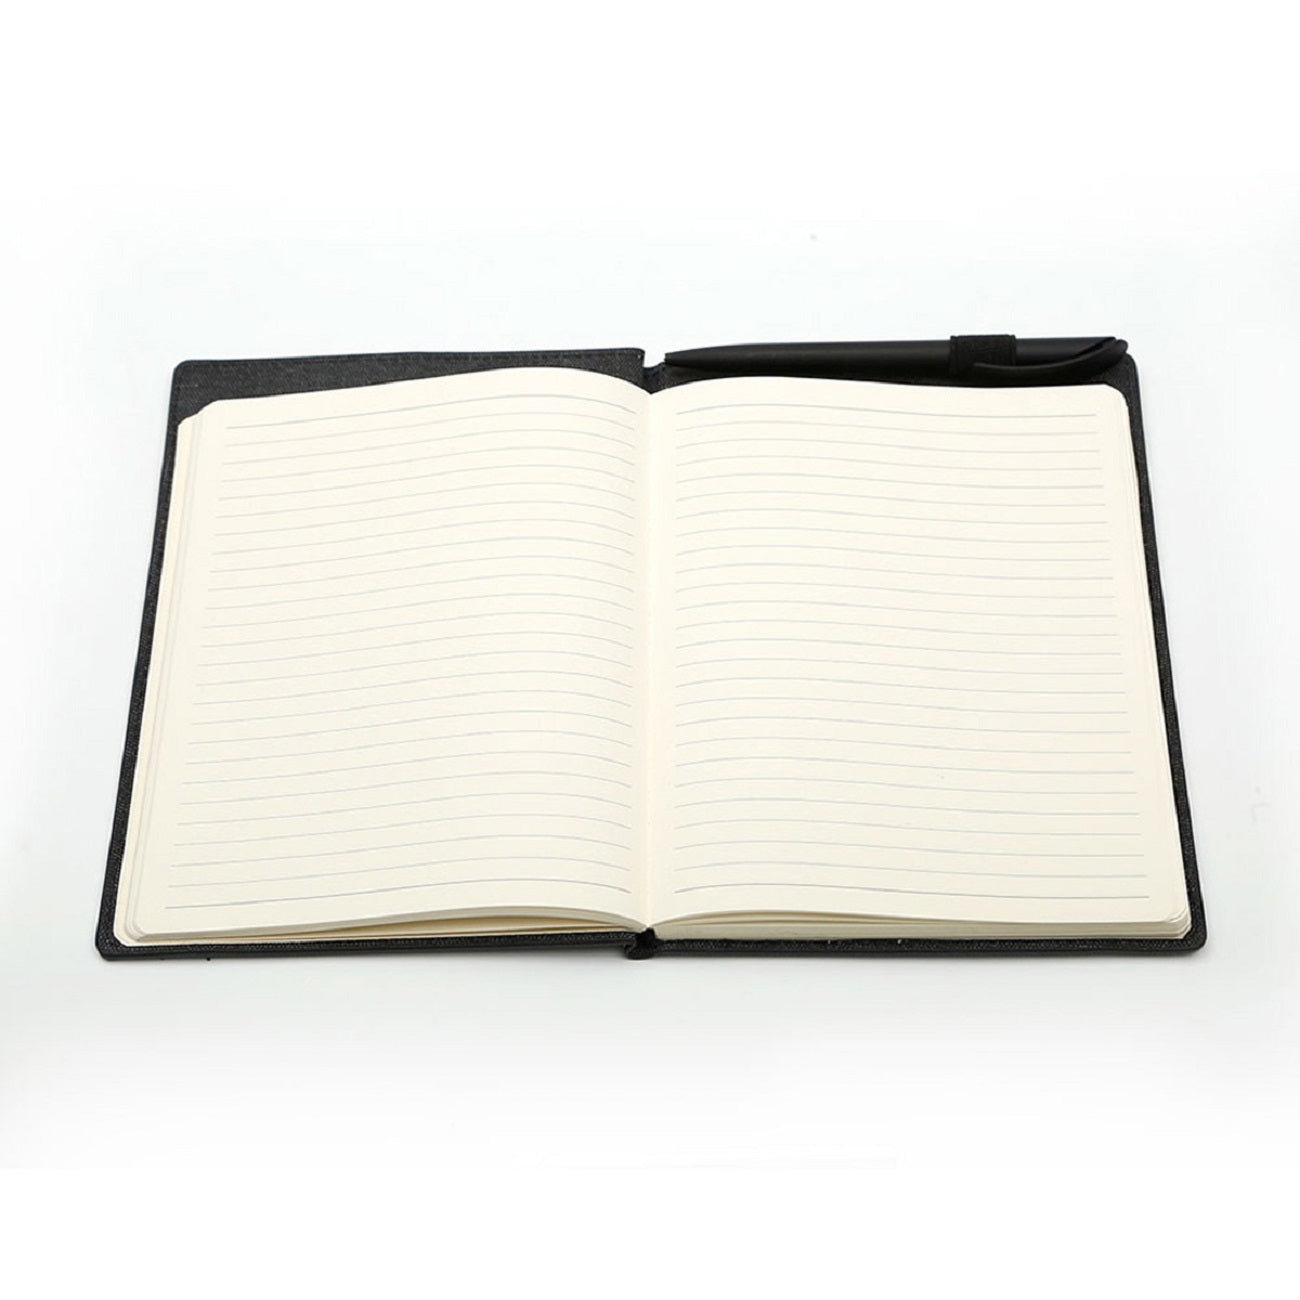 Slide A5 Notebook